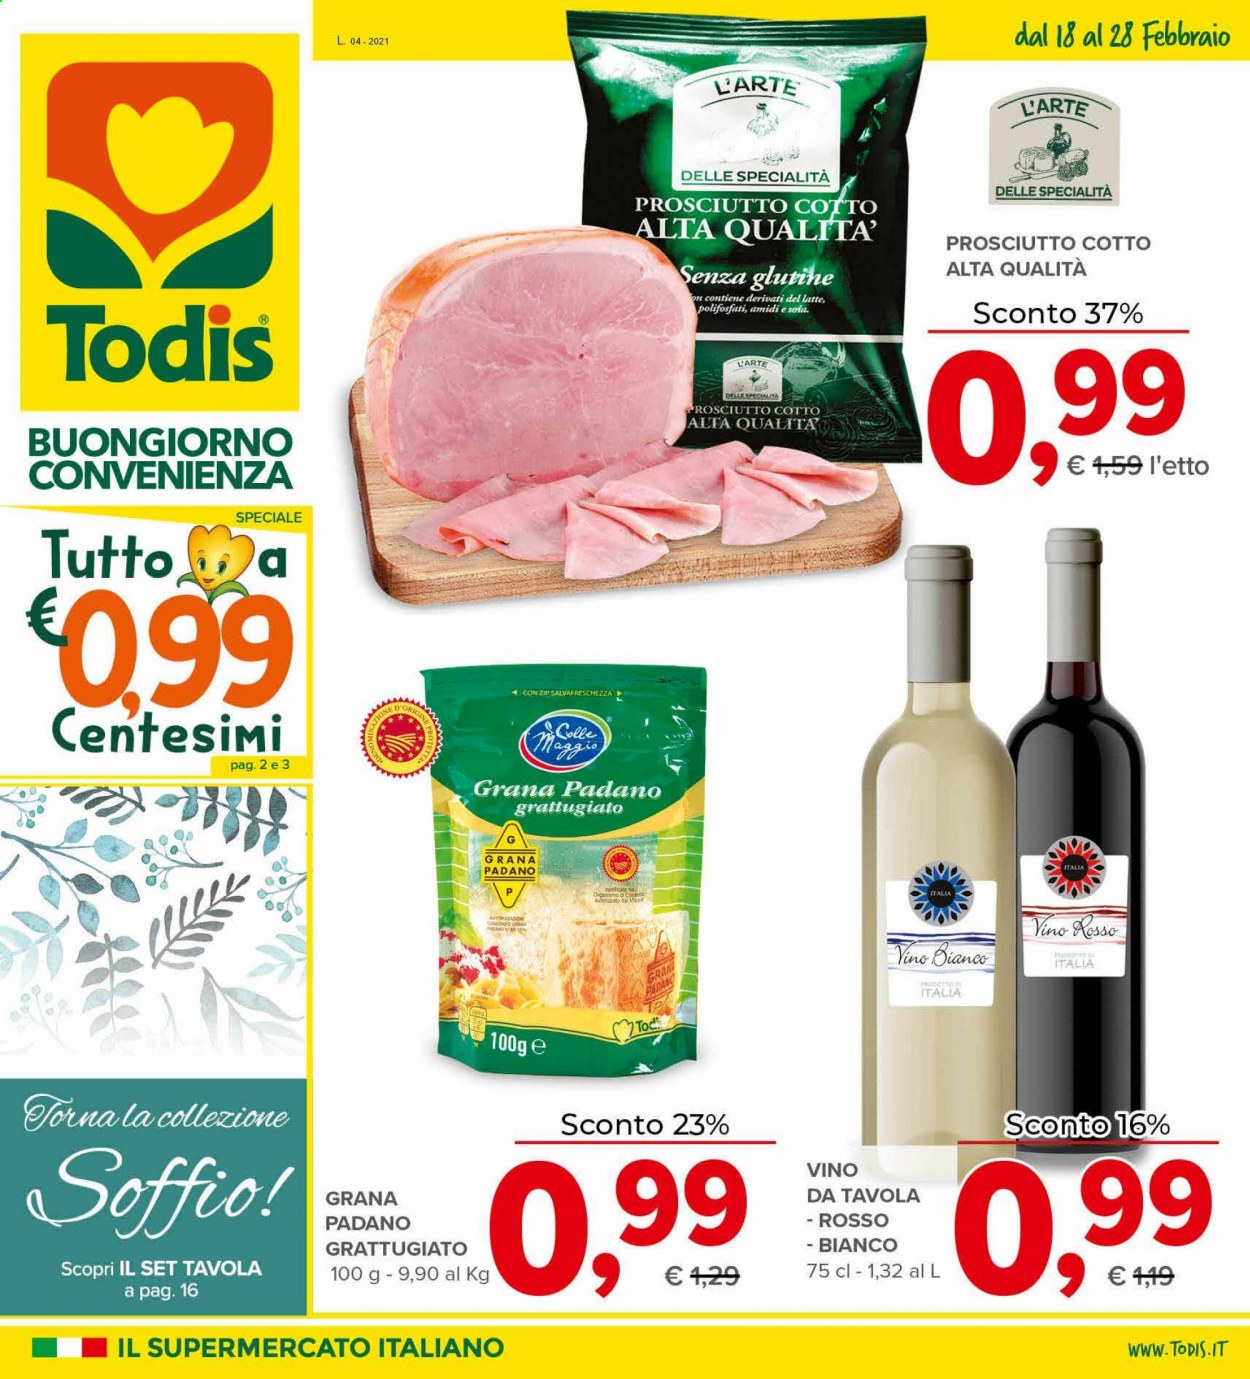 thumbnail - Volantino Todis - 18/2/2021 - 28/2/2021 - Prodotti in offerta - prosciutto, prosciutto cotto, Grana Padano, vino bianco, vino. Pagina 1.